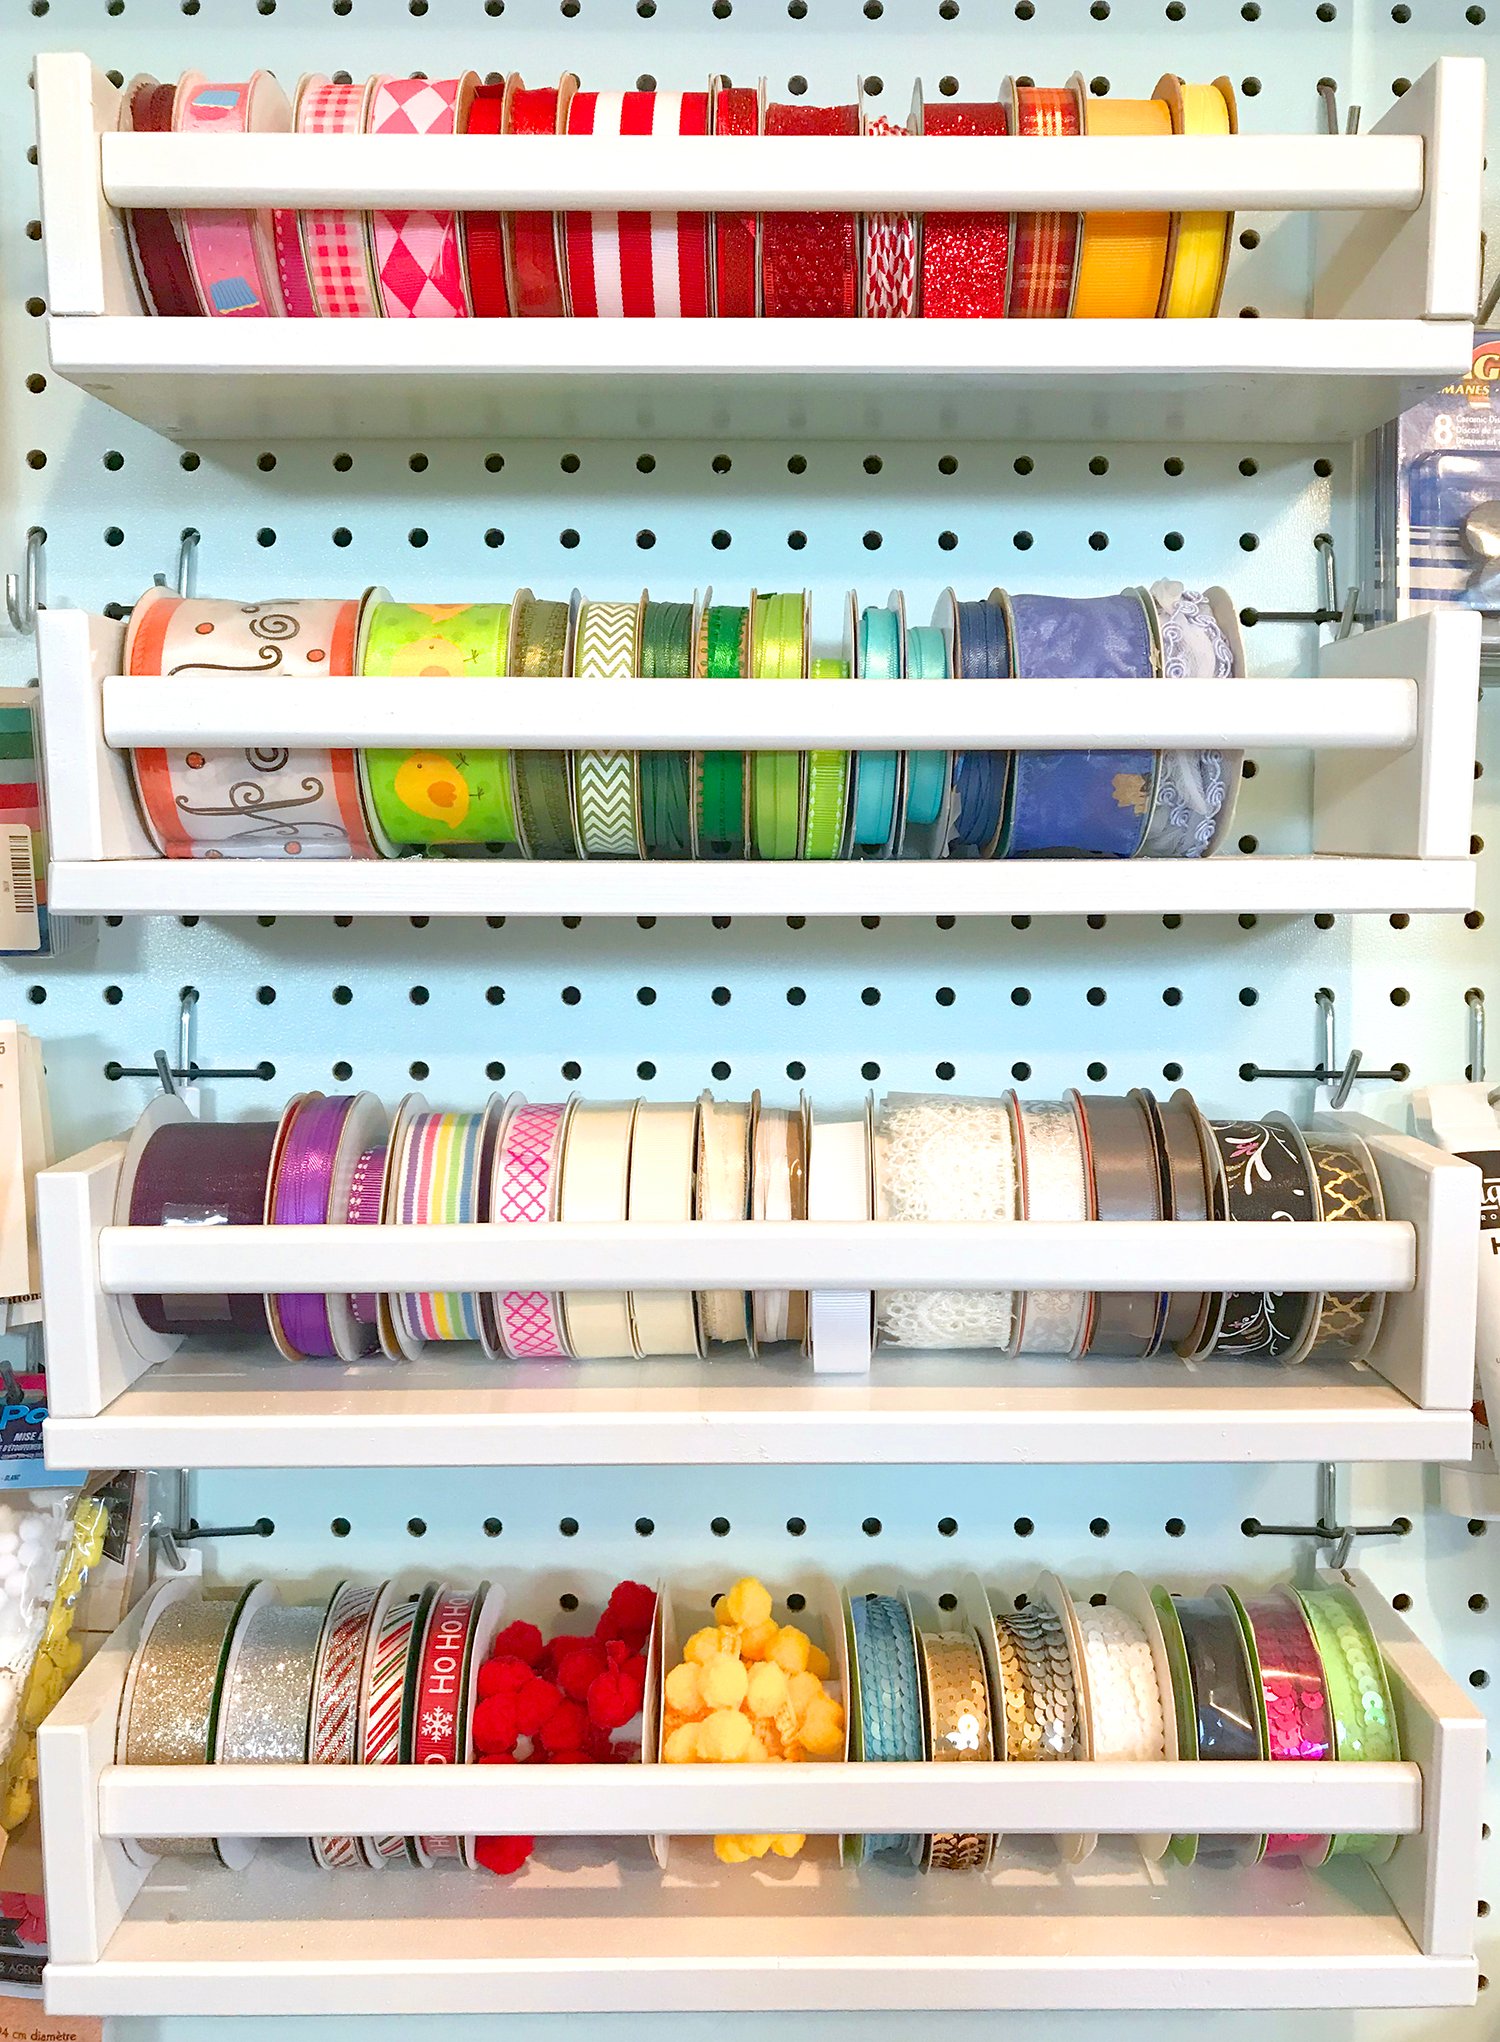 ribbon reels stored in shelves 